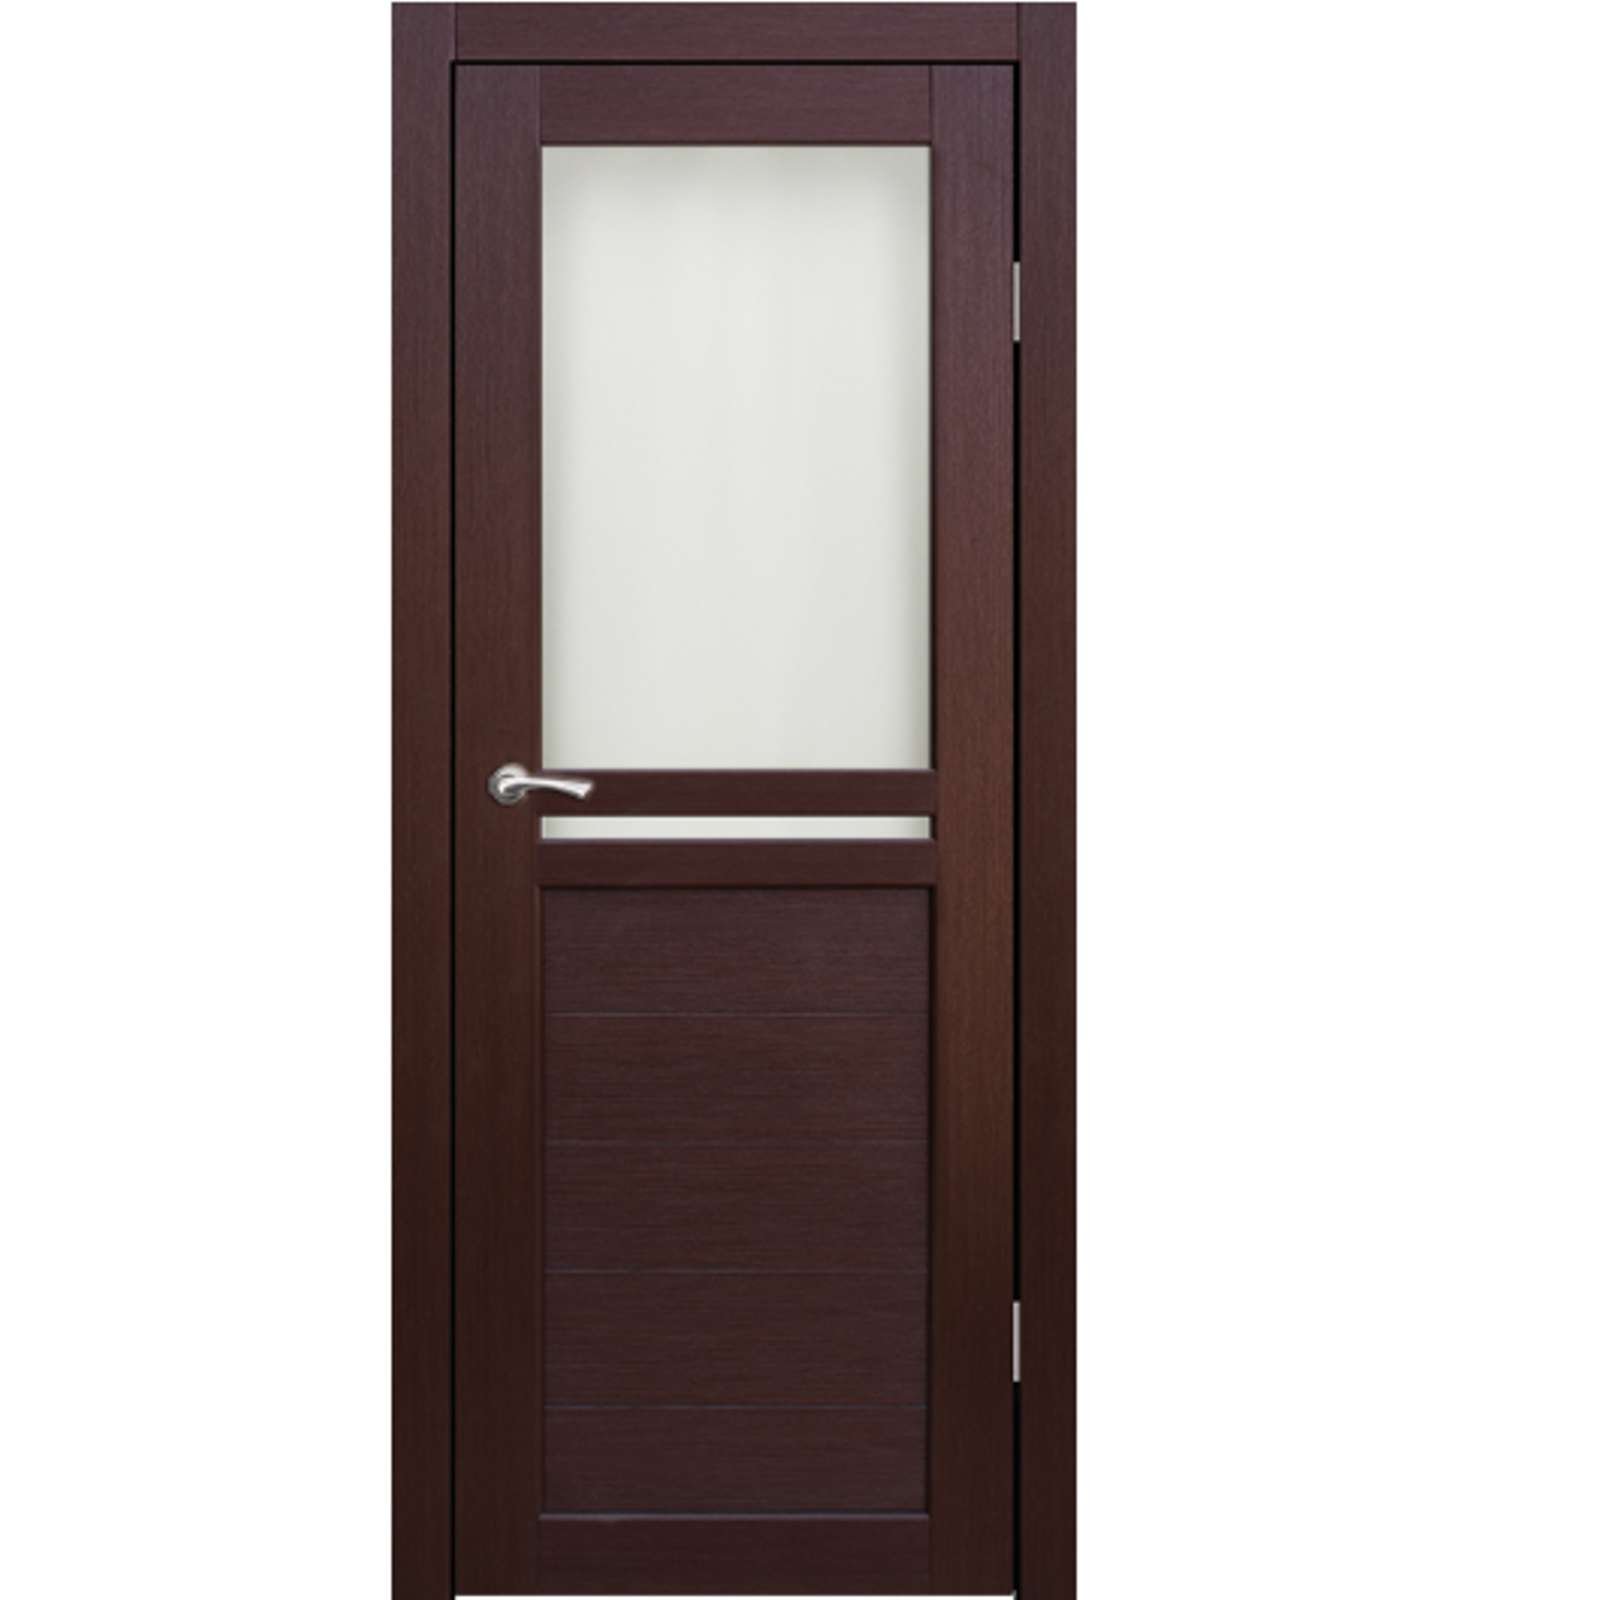 Дверь коричневая со стеклом. Дверное полотно 600х2000 венге. Двери Лацио межкомнатные. Дверное полотно Модерн венге. Межкомнатная дверь маэстро ноче кремоне.